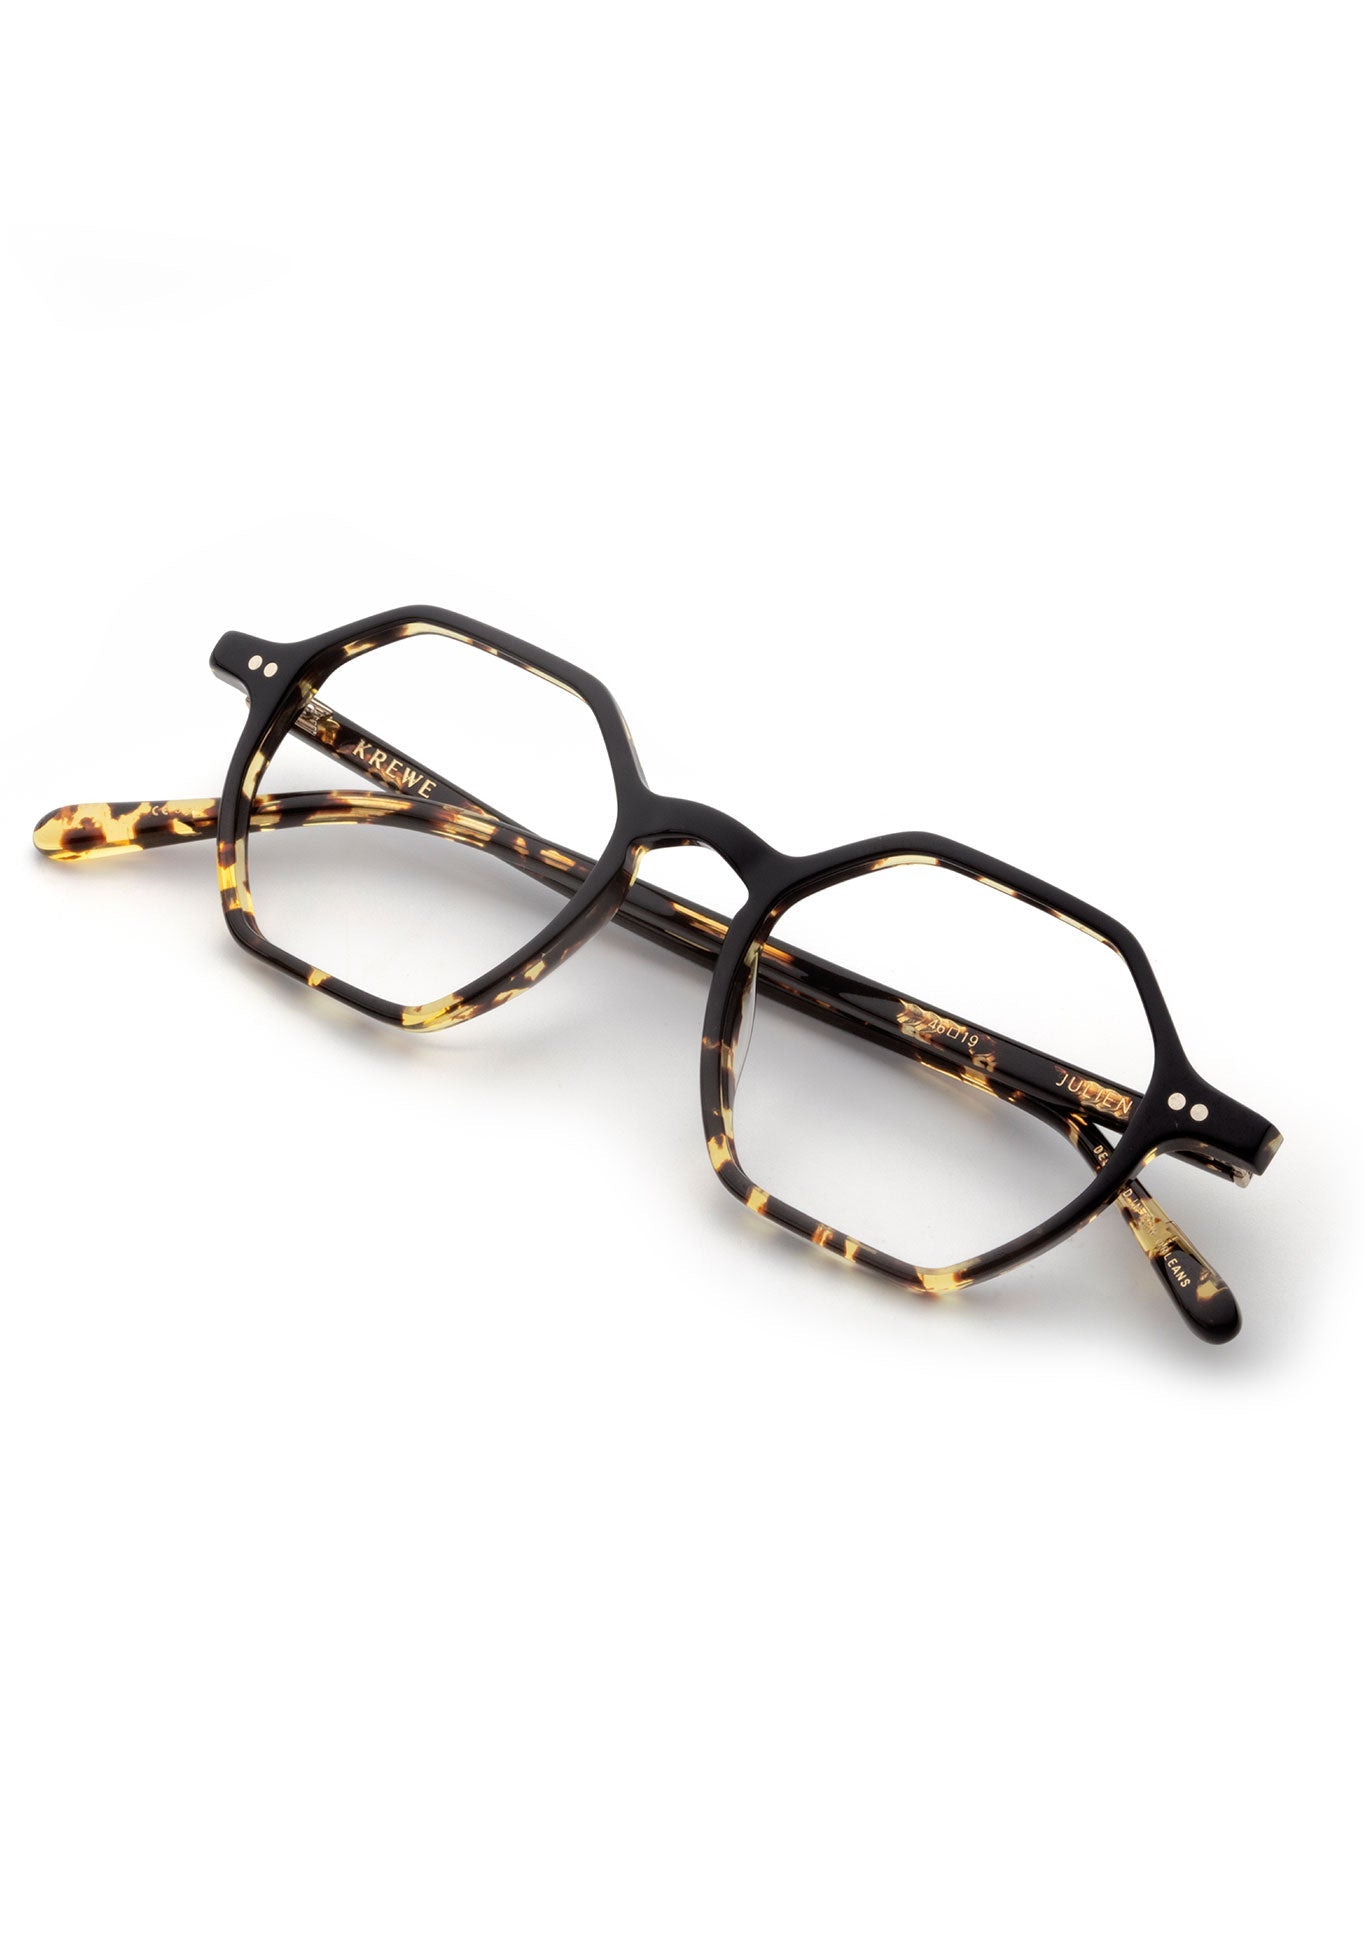 KREWE - JULIEN | Black + Zulu Handcrafted, luxury tortoise shell acetate eyeglasses